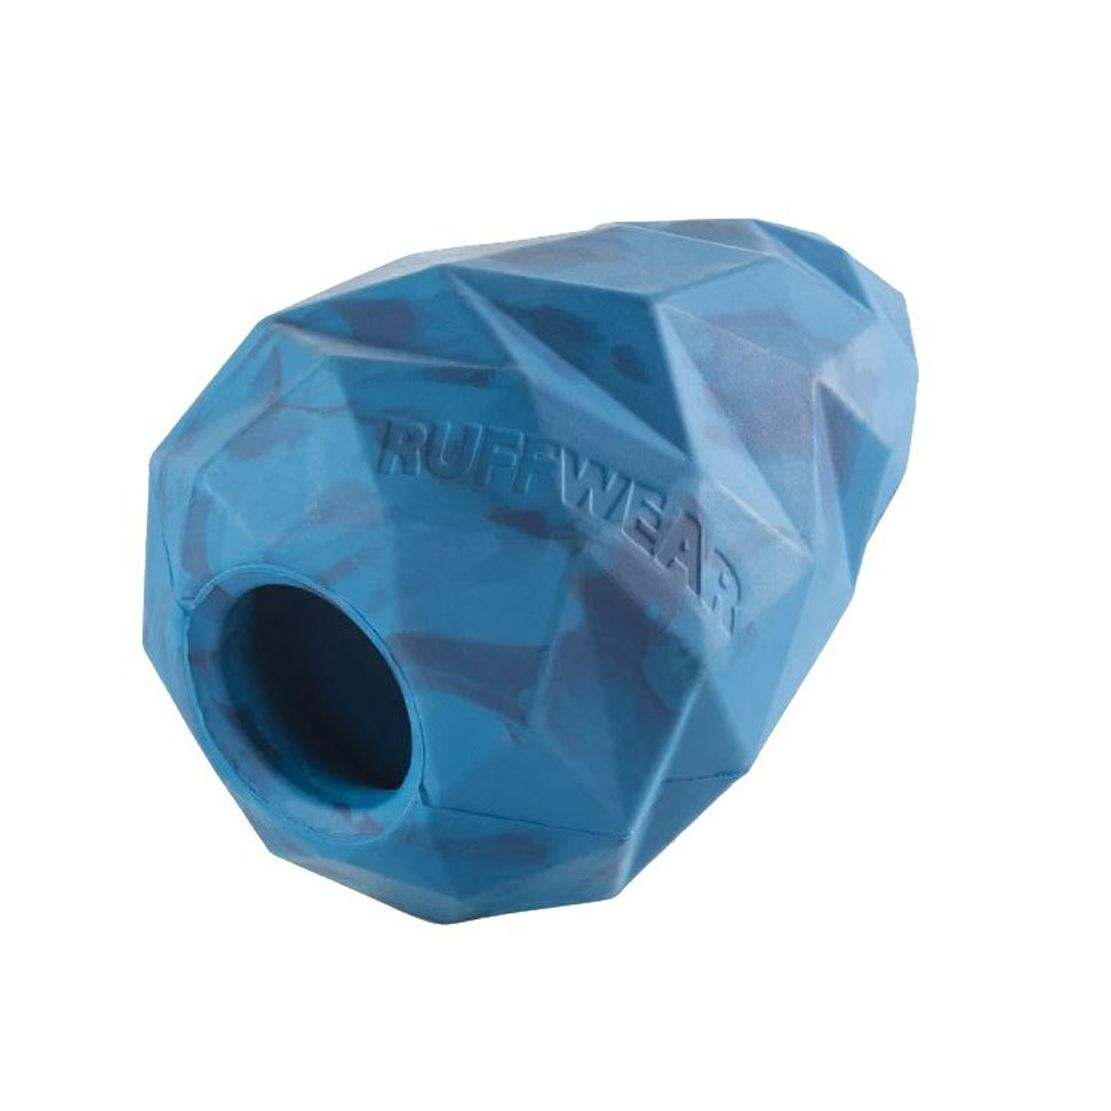 Ruffwear Gnawt-a-Cone kutyajáték Blue Pool kék